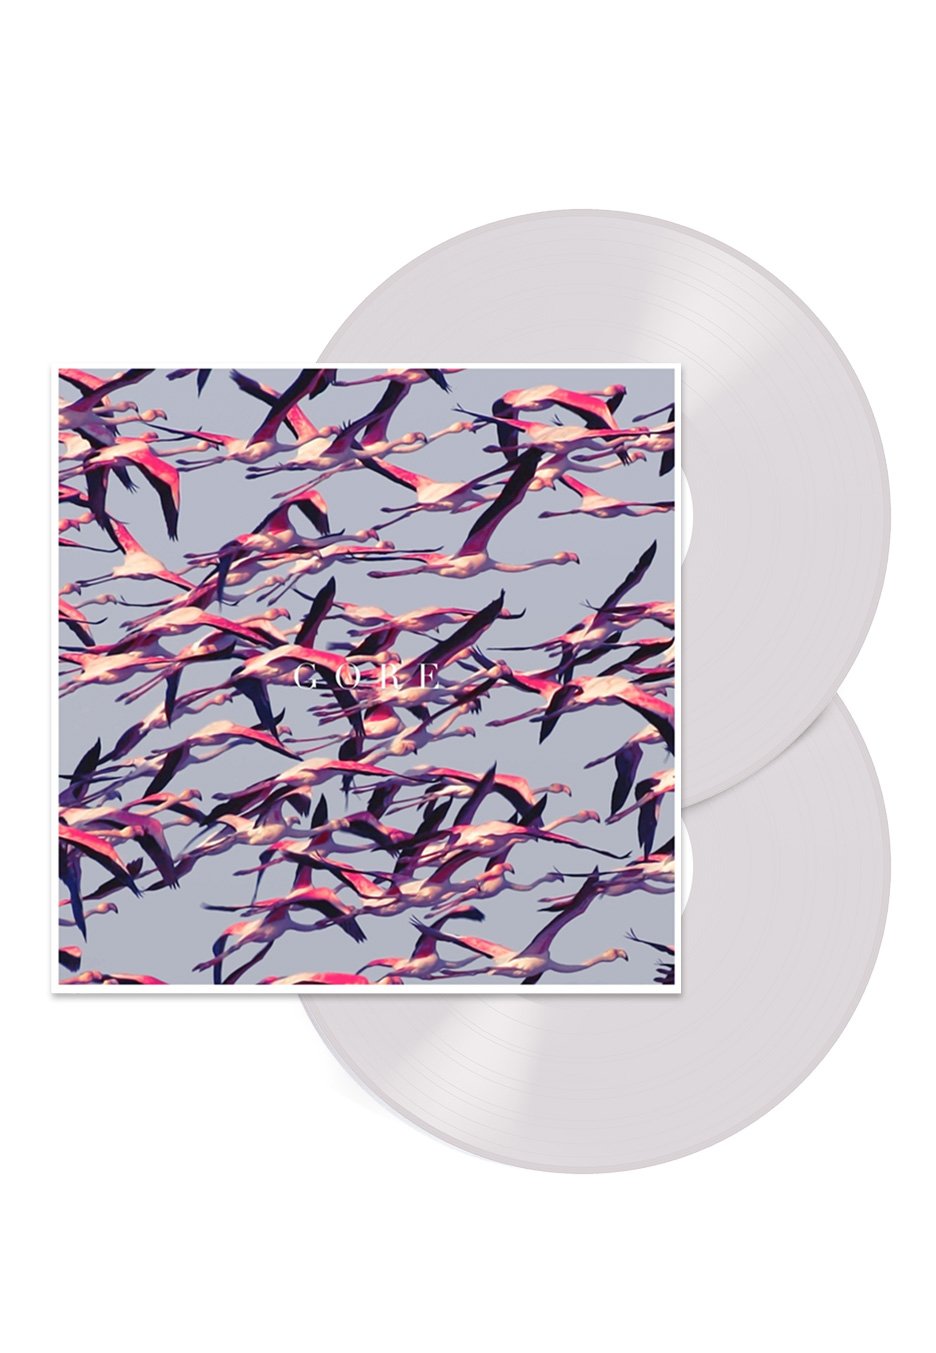 Deftones - Gore White - Colored 2 Vinyl